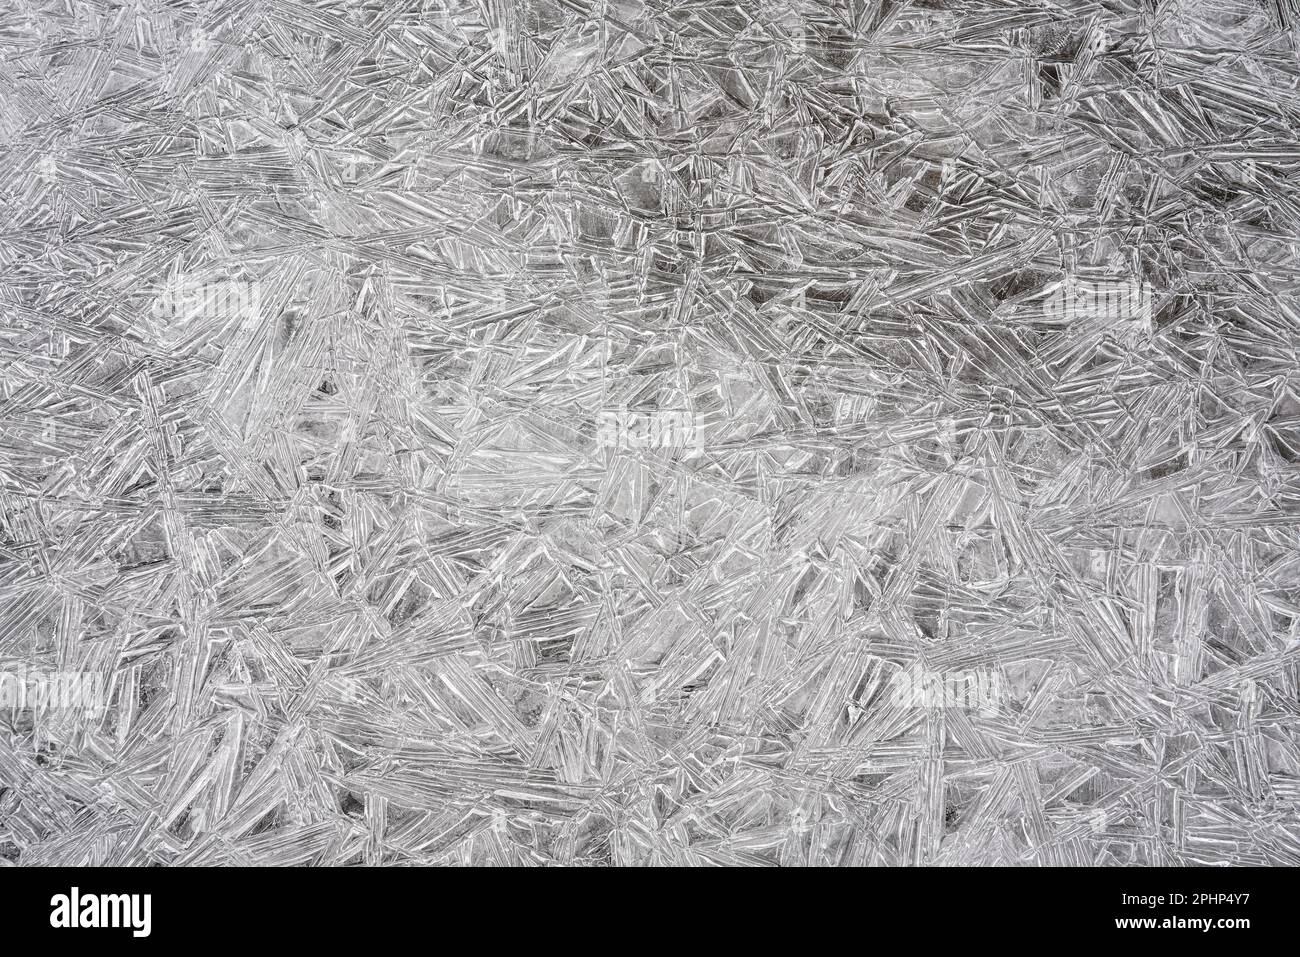 Glace sur une rivière gelée formant des structures cristallines, gros plan macro de détails d'en haut - arrière-plan abstrait d'hiver Banque D'Images